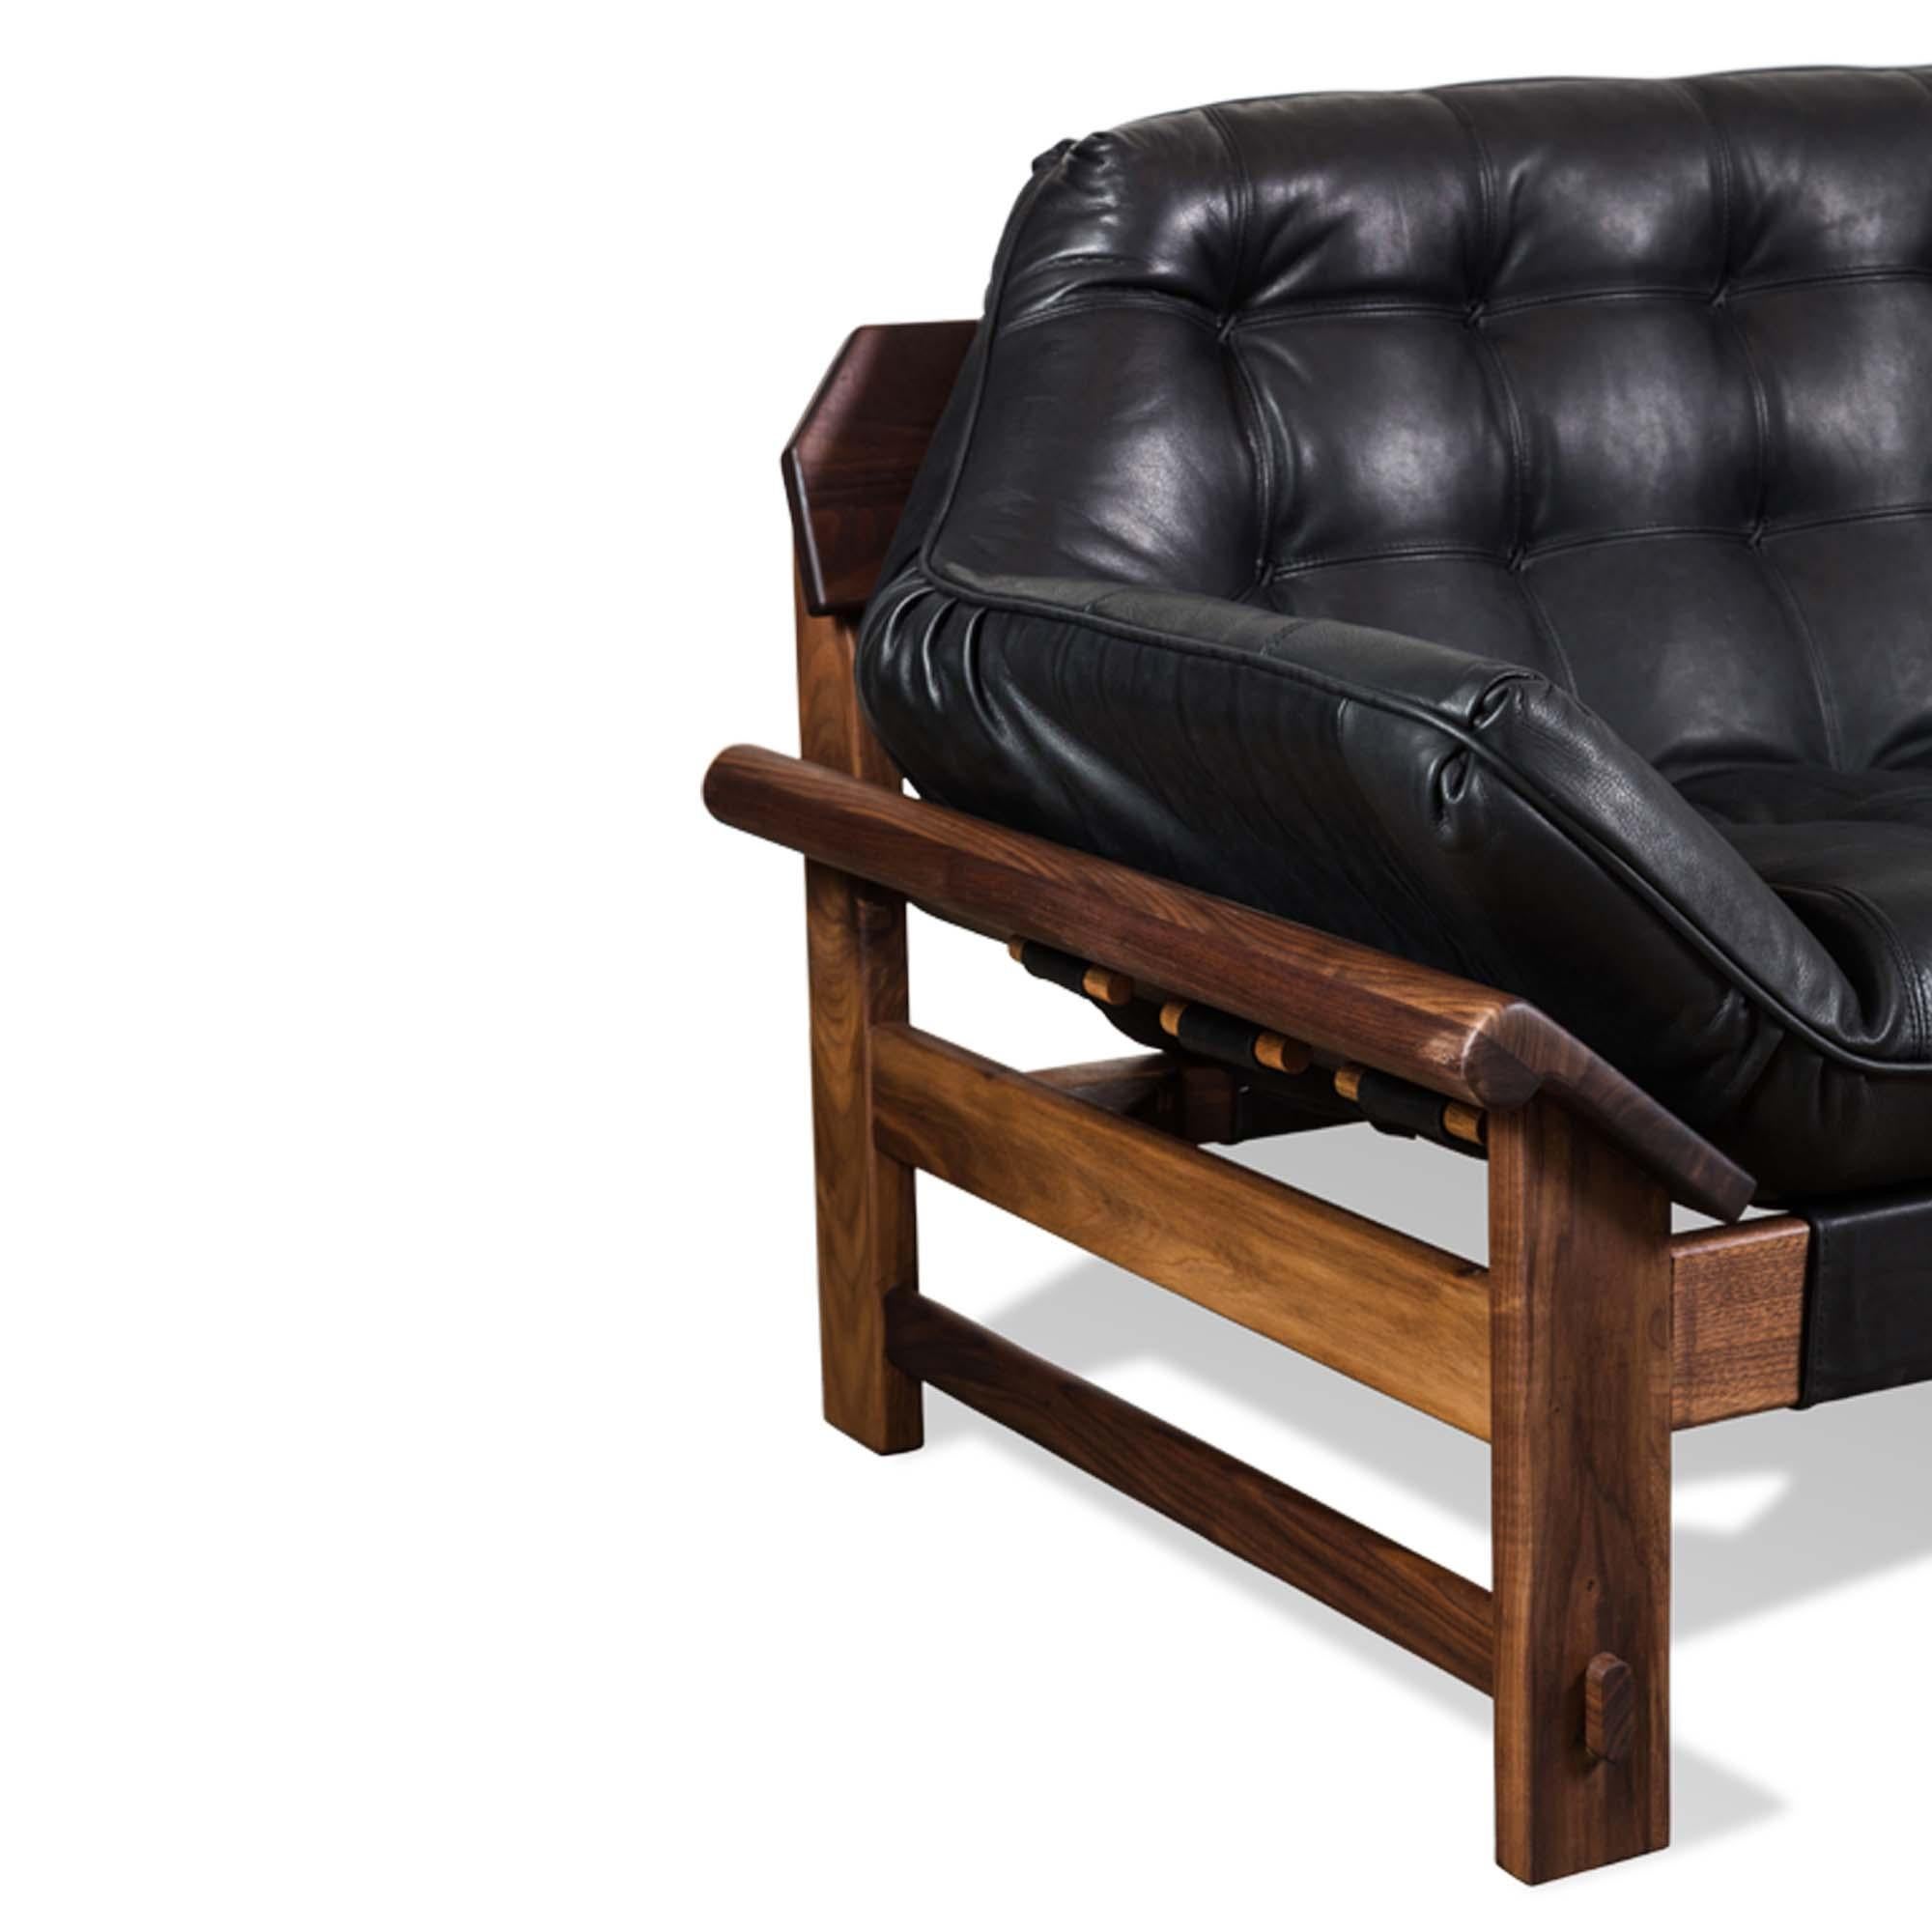 Mid-Century Modern Walnut and Black Leather Ojai Sofa by Lawson-Fenning